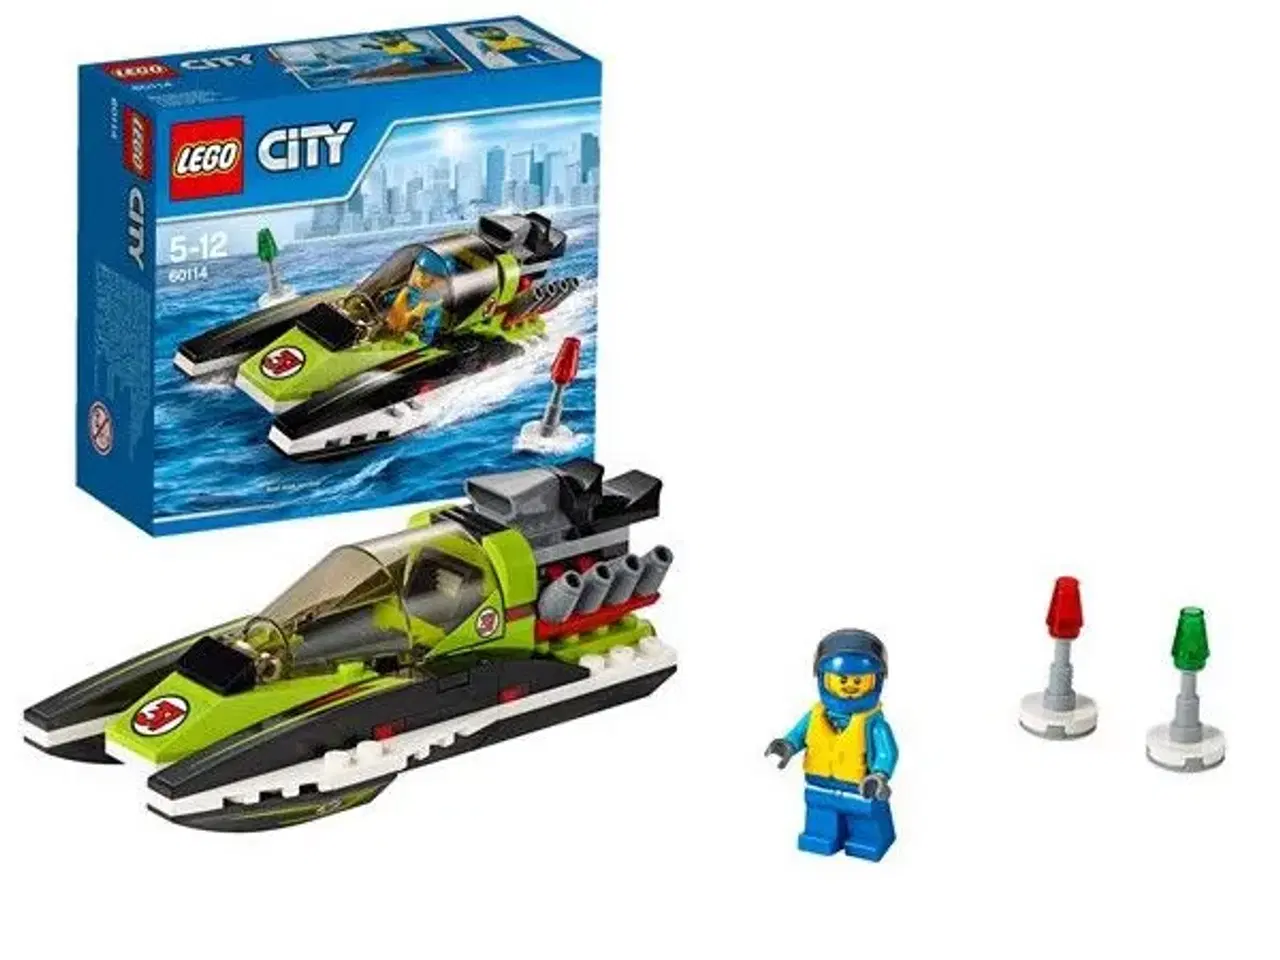 Billede 1 - Lego city speedbåd - nr. 60114  - Har 2 stk